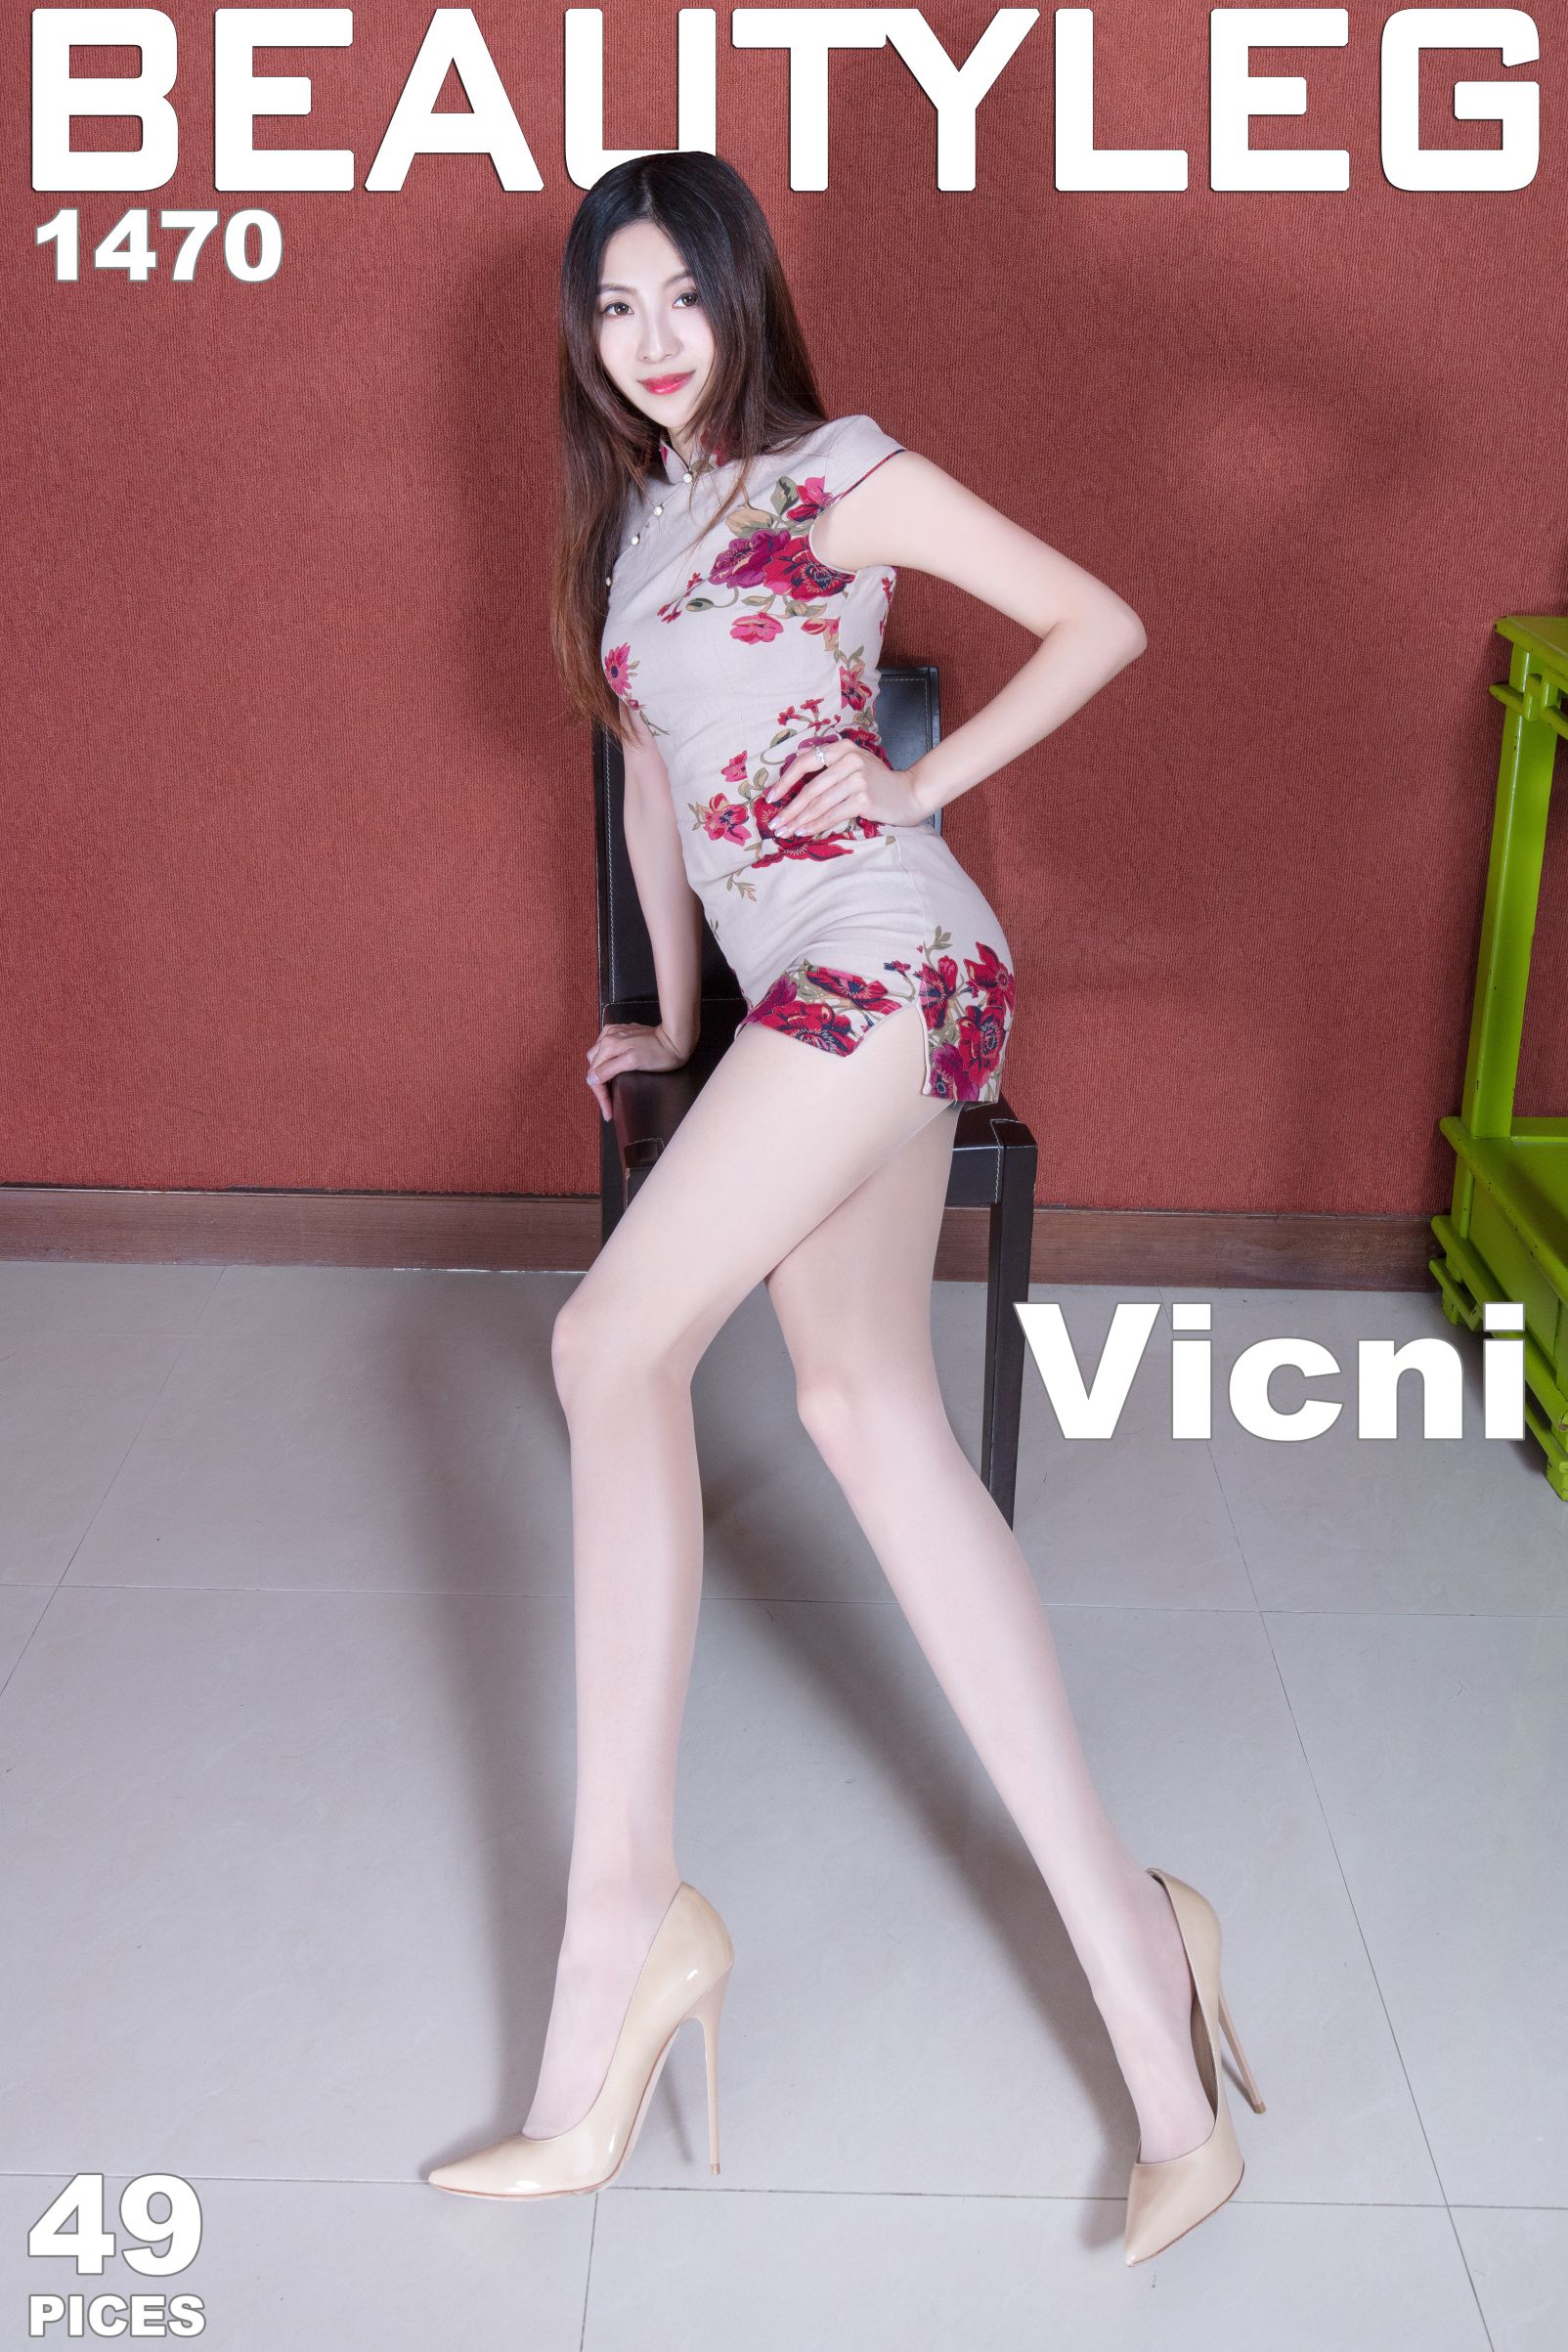 [Beautyleg] No.1470 Vicni简晓育 - 旗袍+超短裙美腿写真[41](第2页)